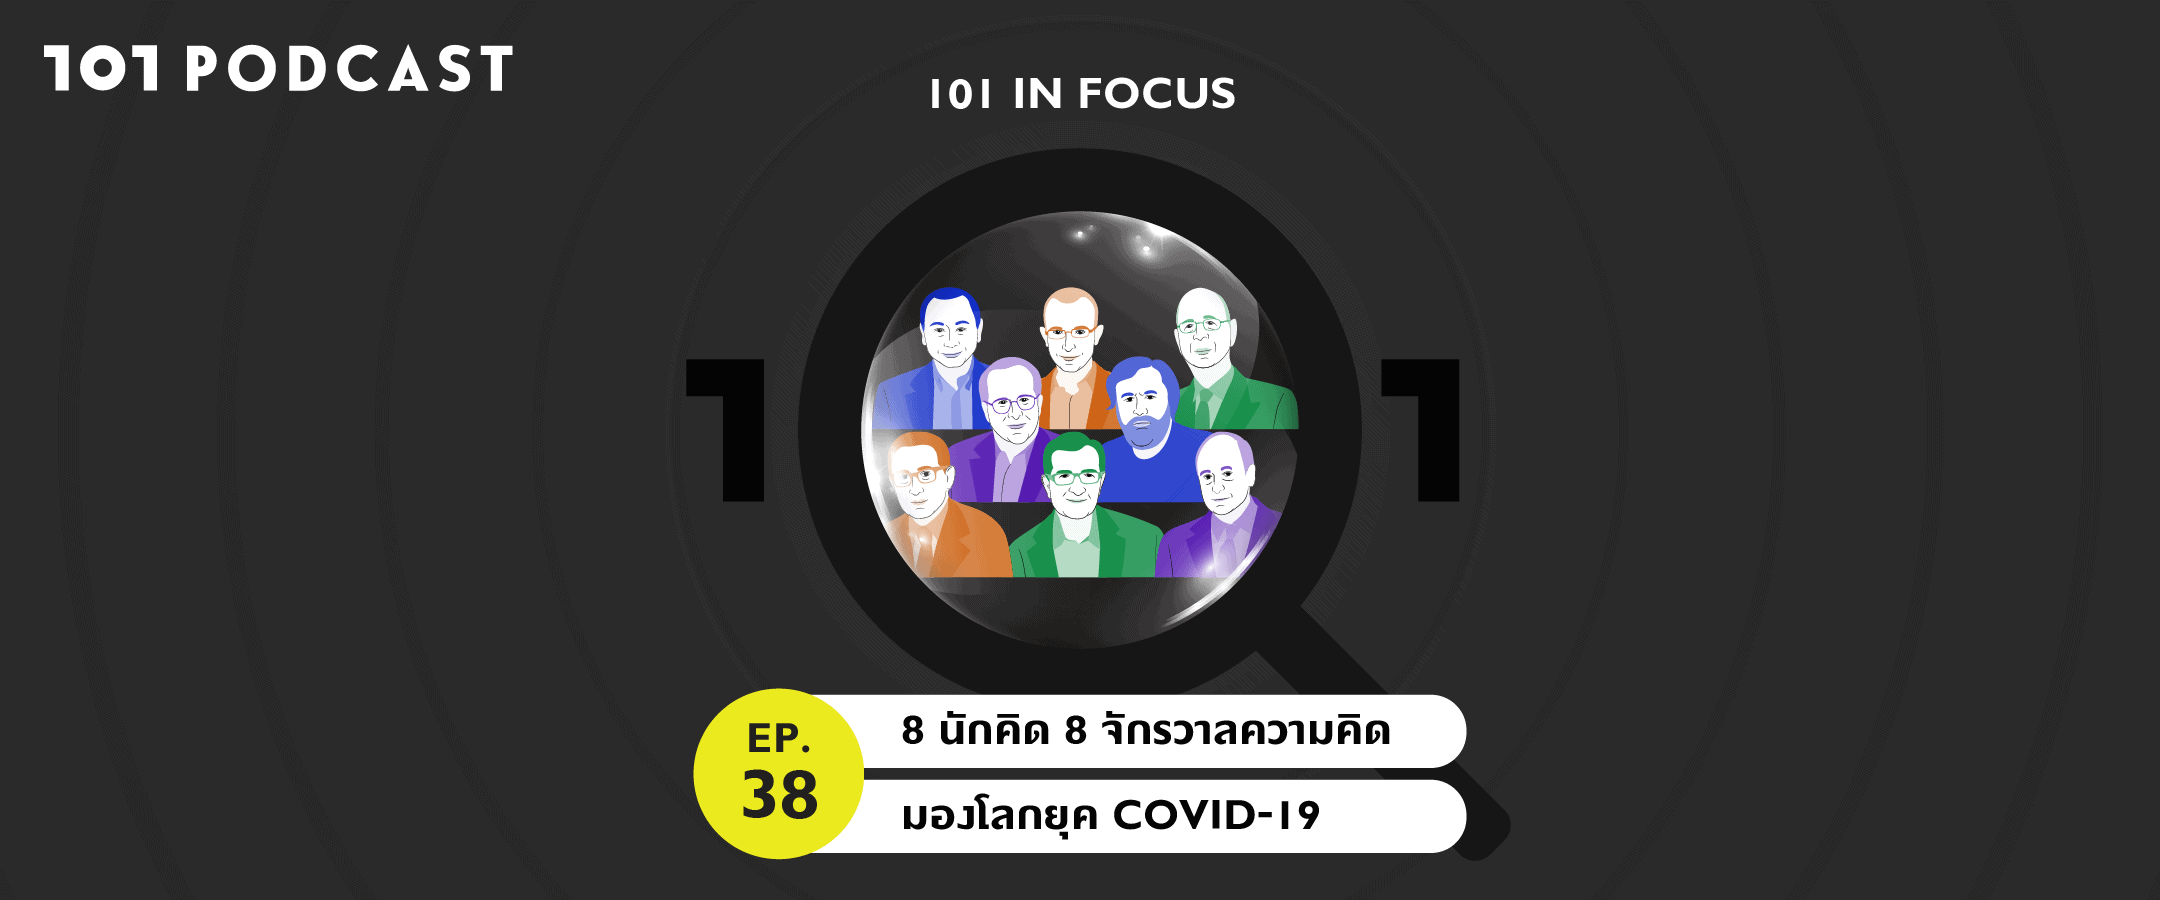 101 In Focus Ep.38 : 8 นักคิด 8 จักรวาลความคิด มองโลกยุค COVID-19